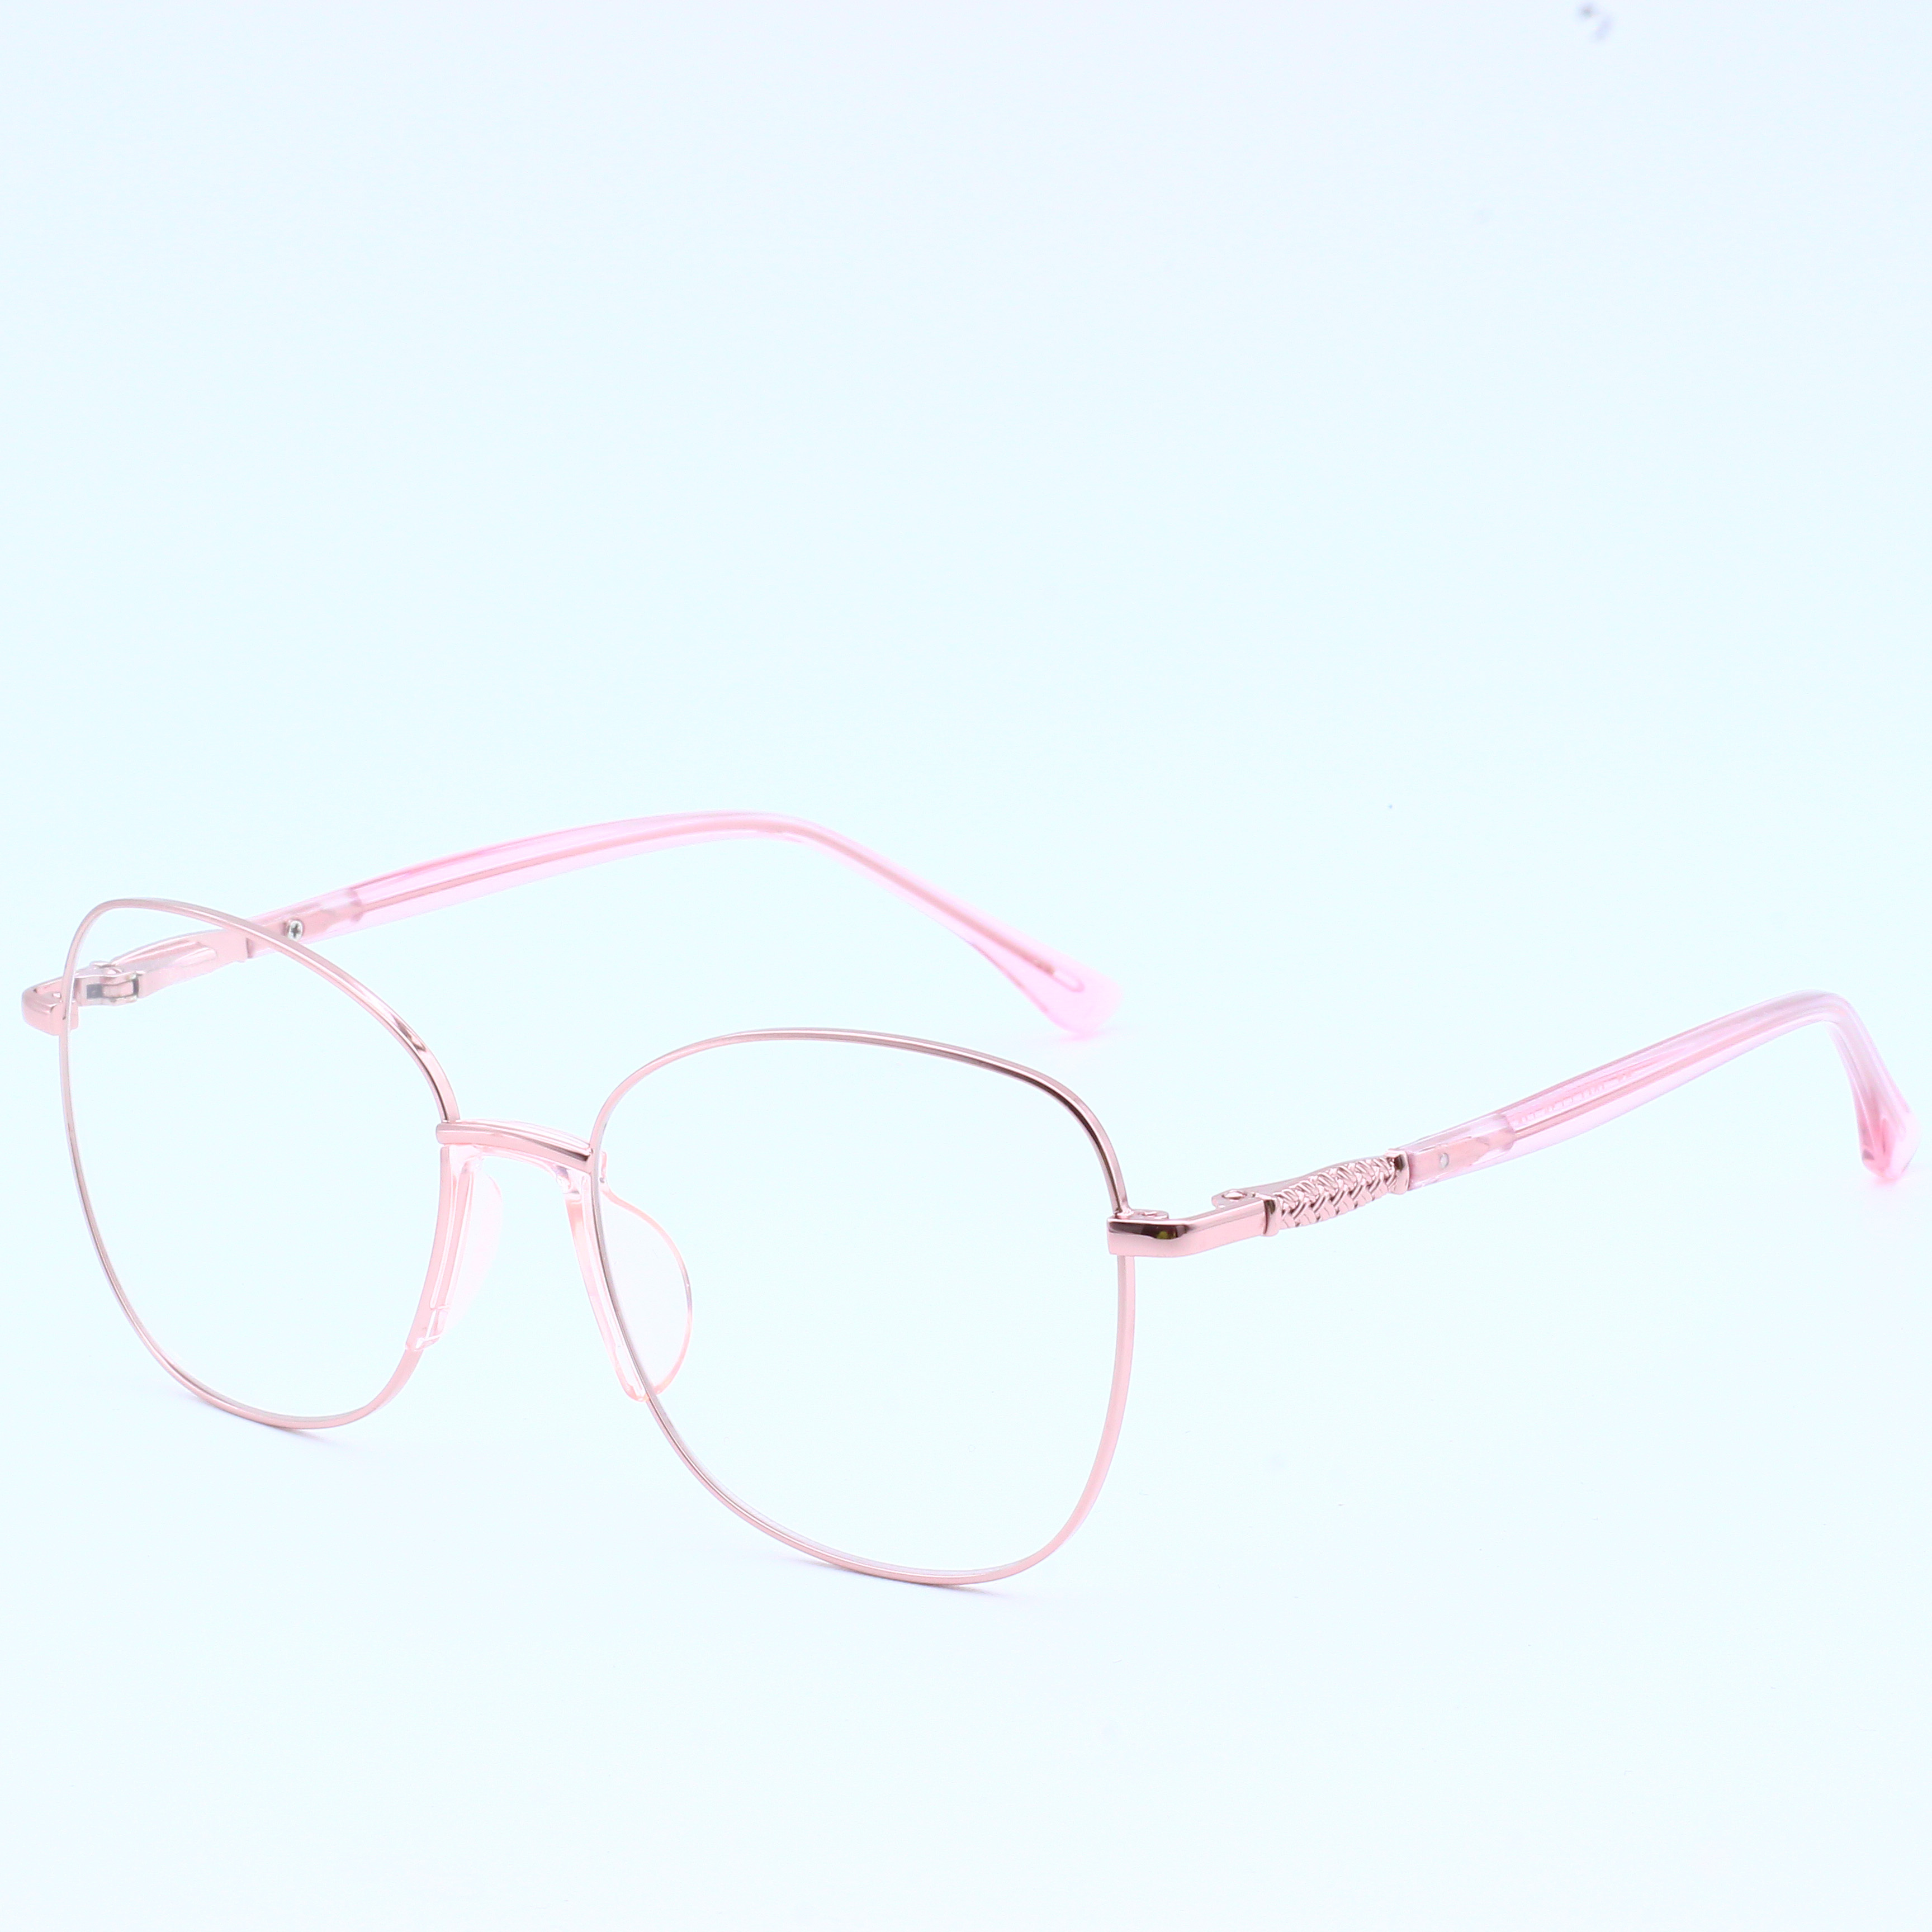 Designer Brand Metal Wholesale Eyeglasses River Optical Frame (9)